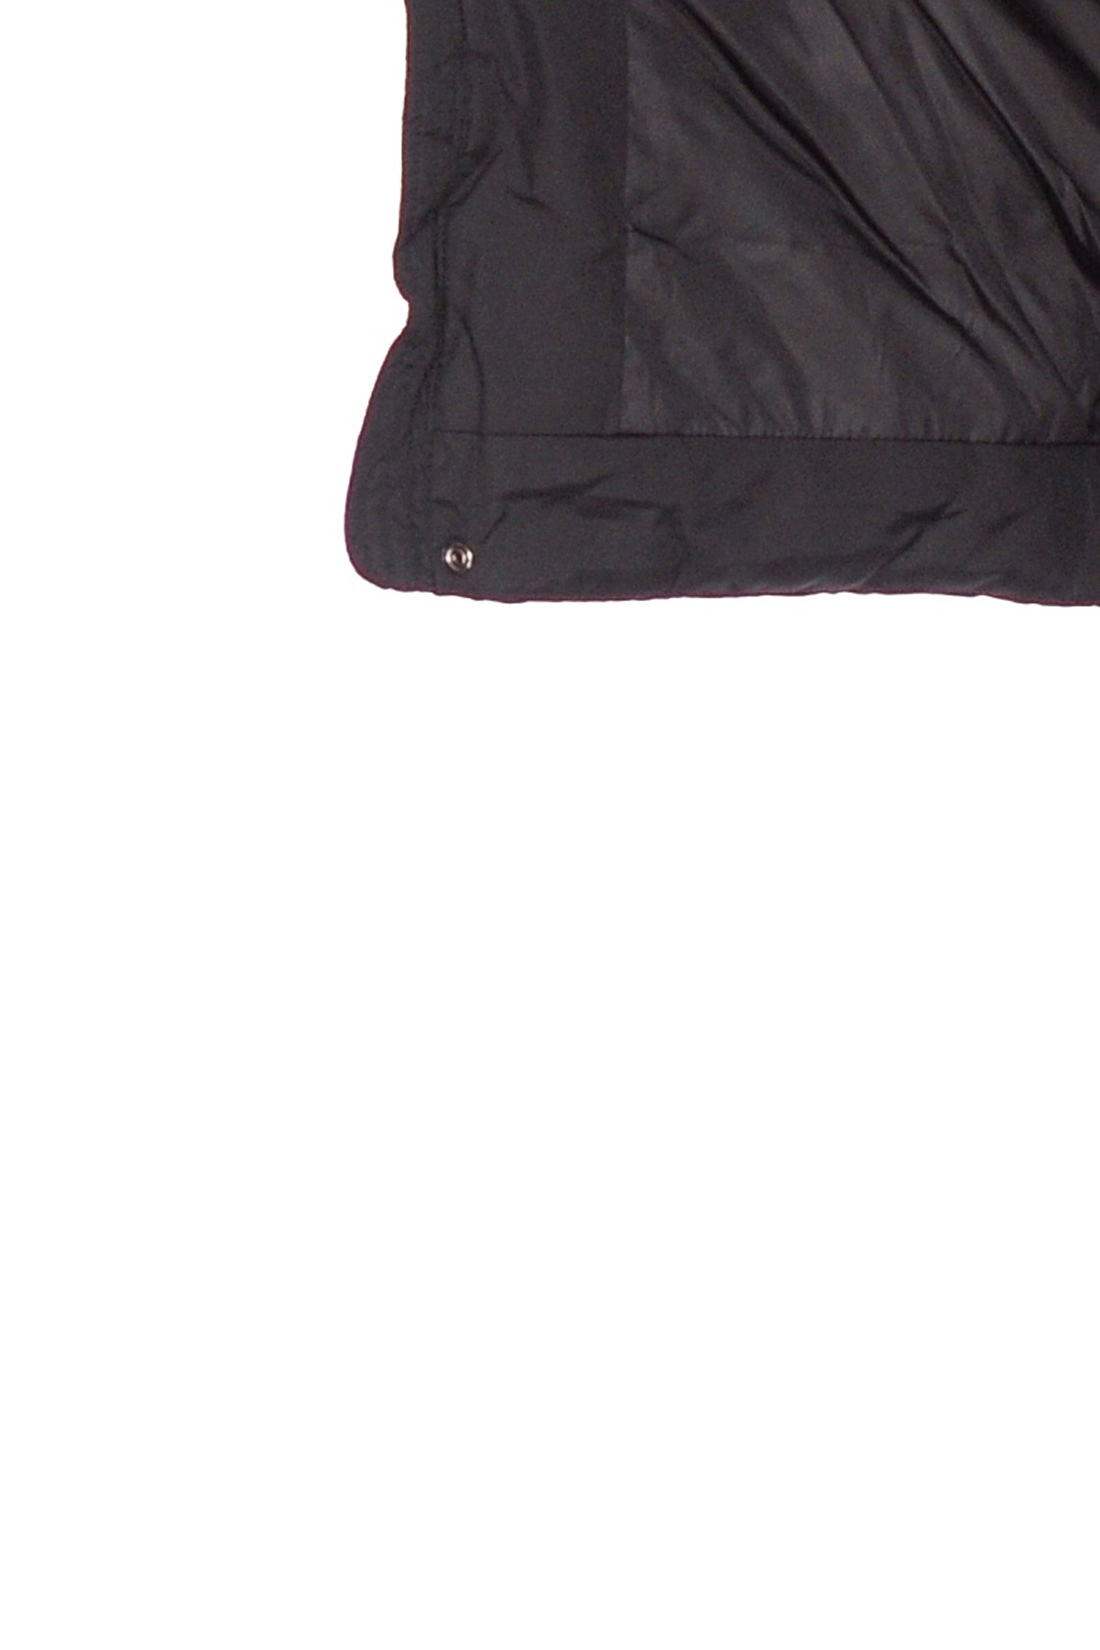 Длинный бесшовный пуховик (арт. baon B508554), размер L, цвет черный Длинный бесшовный пуховик (арт. baon B508554) - фото 3